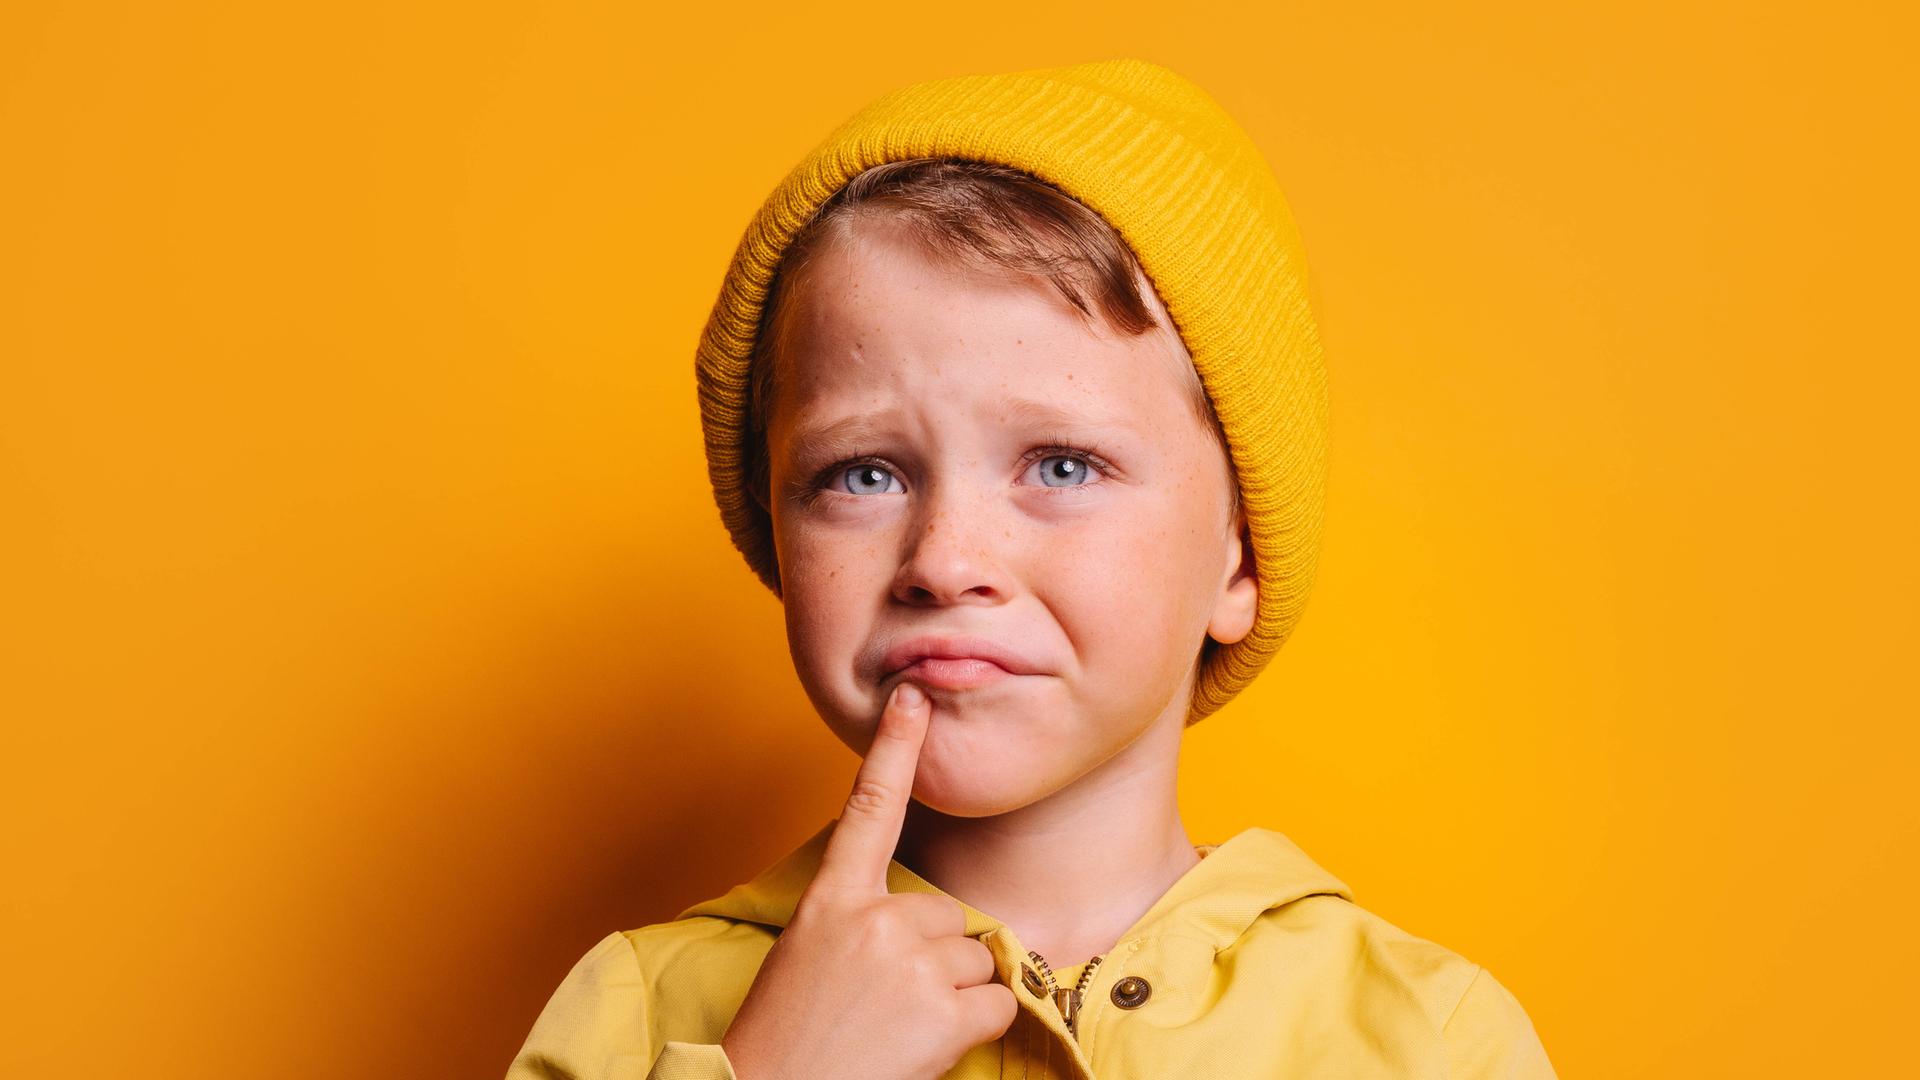 Ein Kind mit gelber Mütze vor gelbem Hintergrund mit grübelndem Gesichtsausdruck und dem Zeigefinger am Kinn